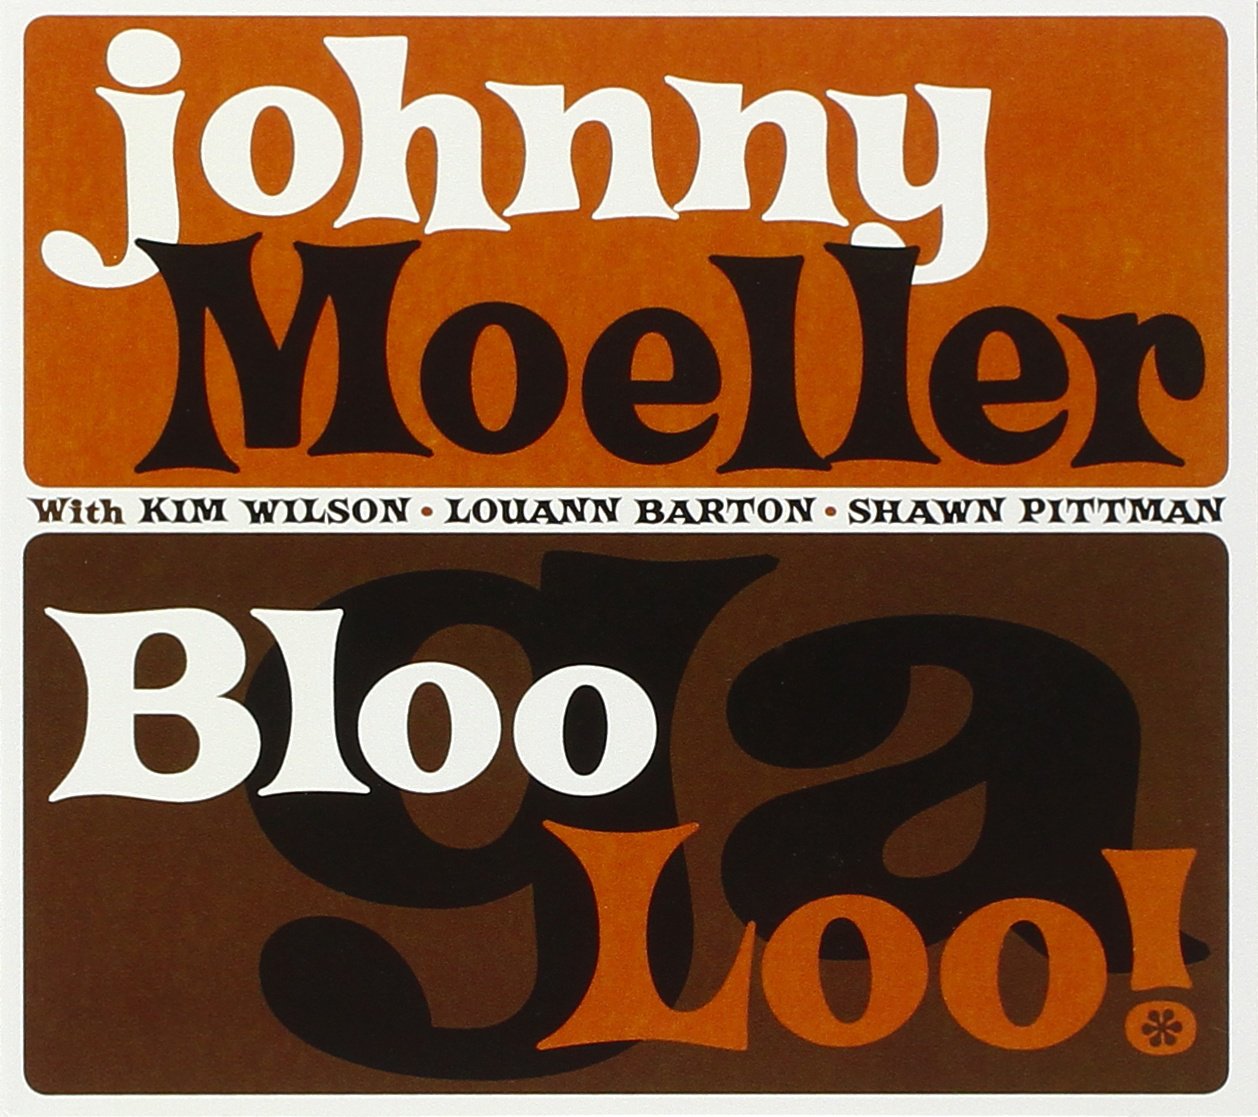 Johnny Moeller "Bloogaloo!"